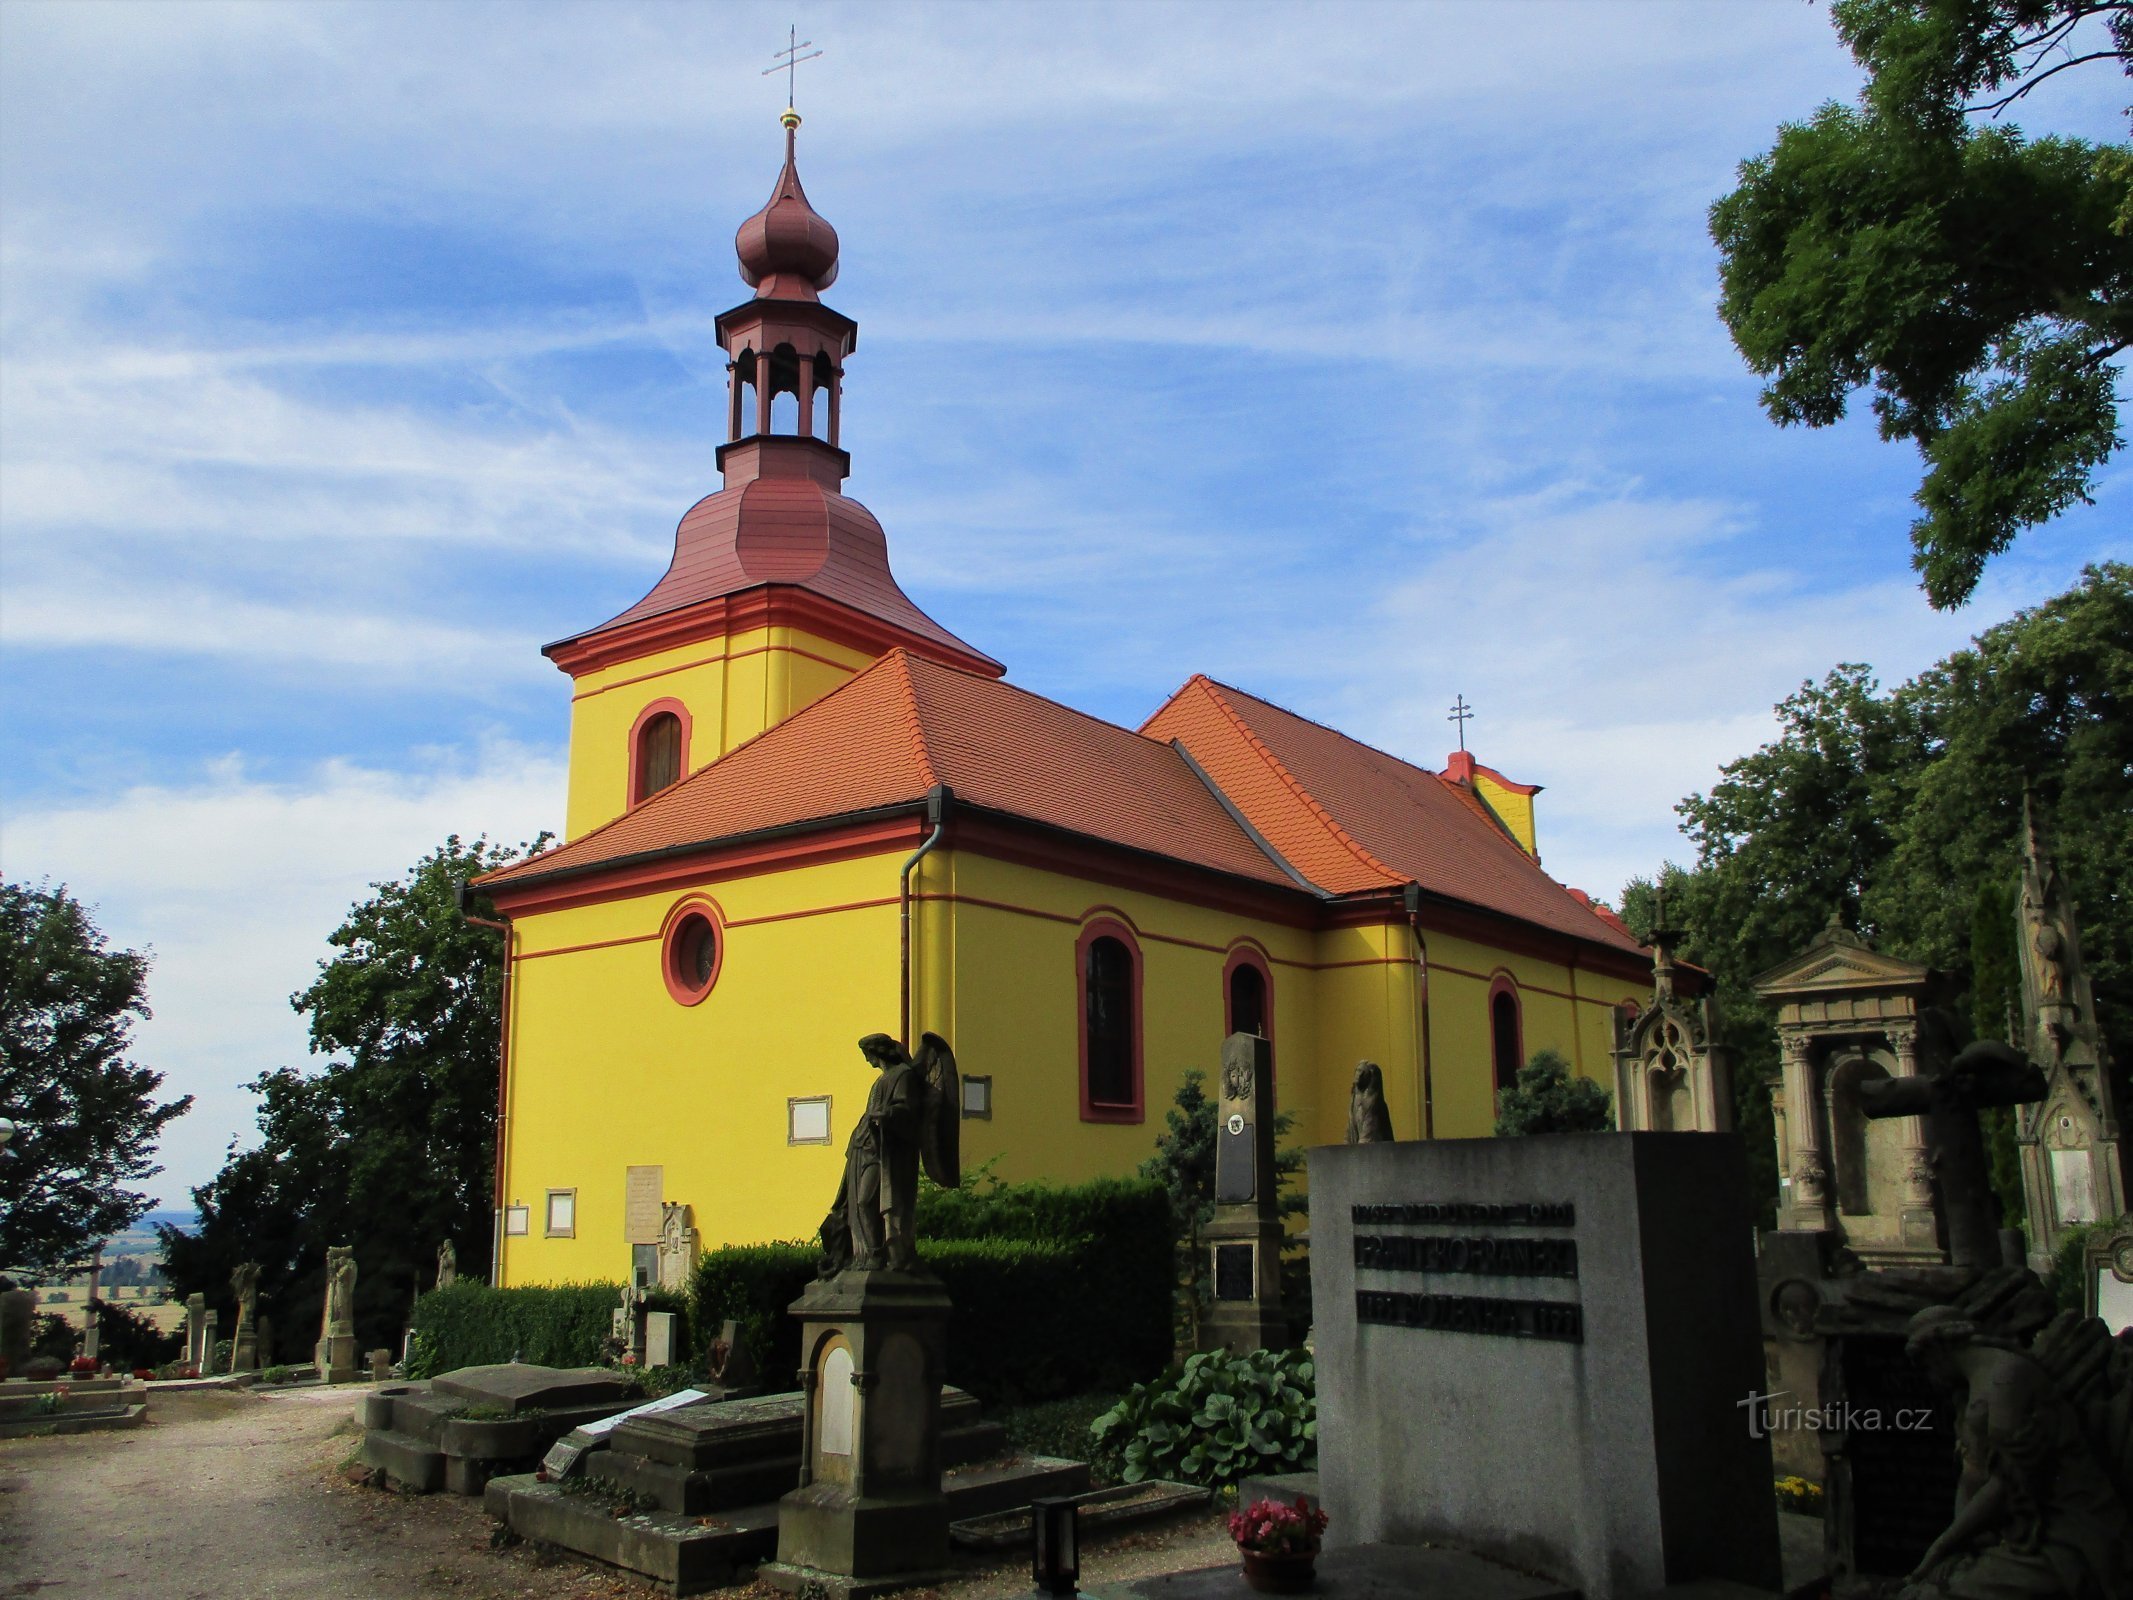 Nhà thờ nghĩa trang St. Gothard, giám mục (Hořice, 26.7.2020/XNUMX/XNUMX)